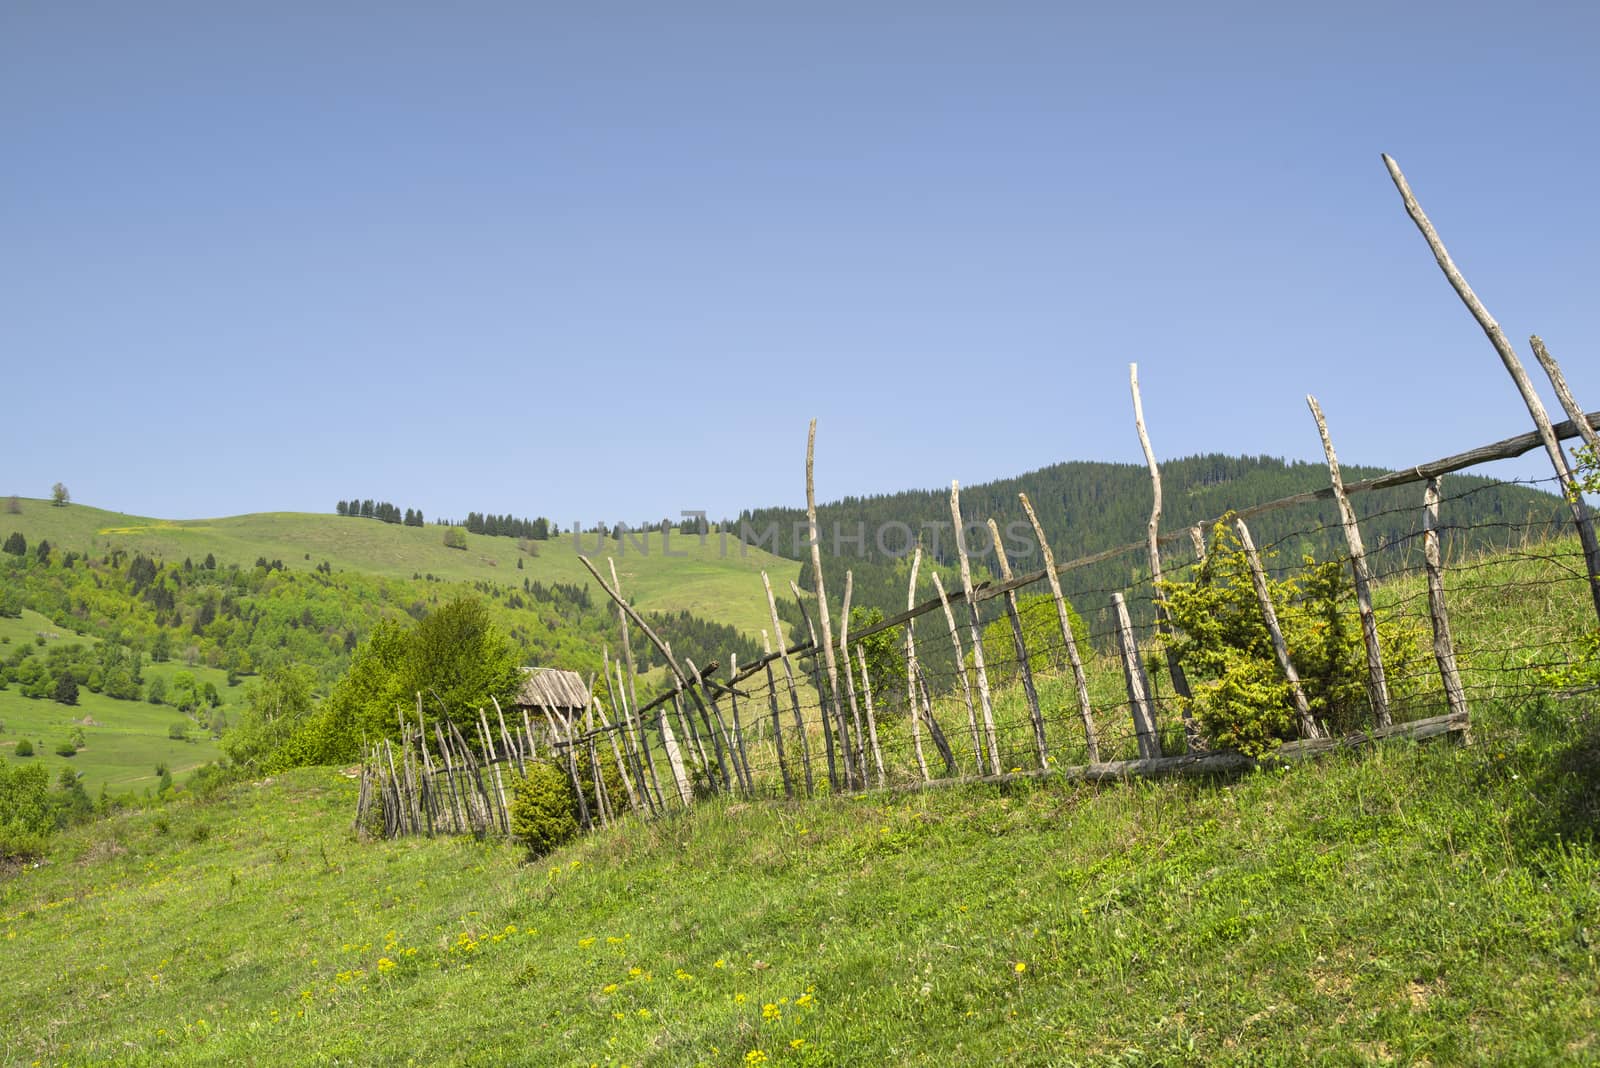 Fence in rural landscape, spring green